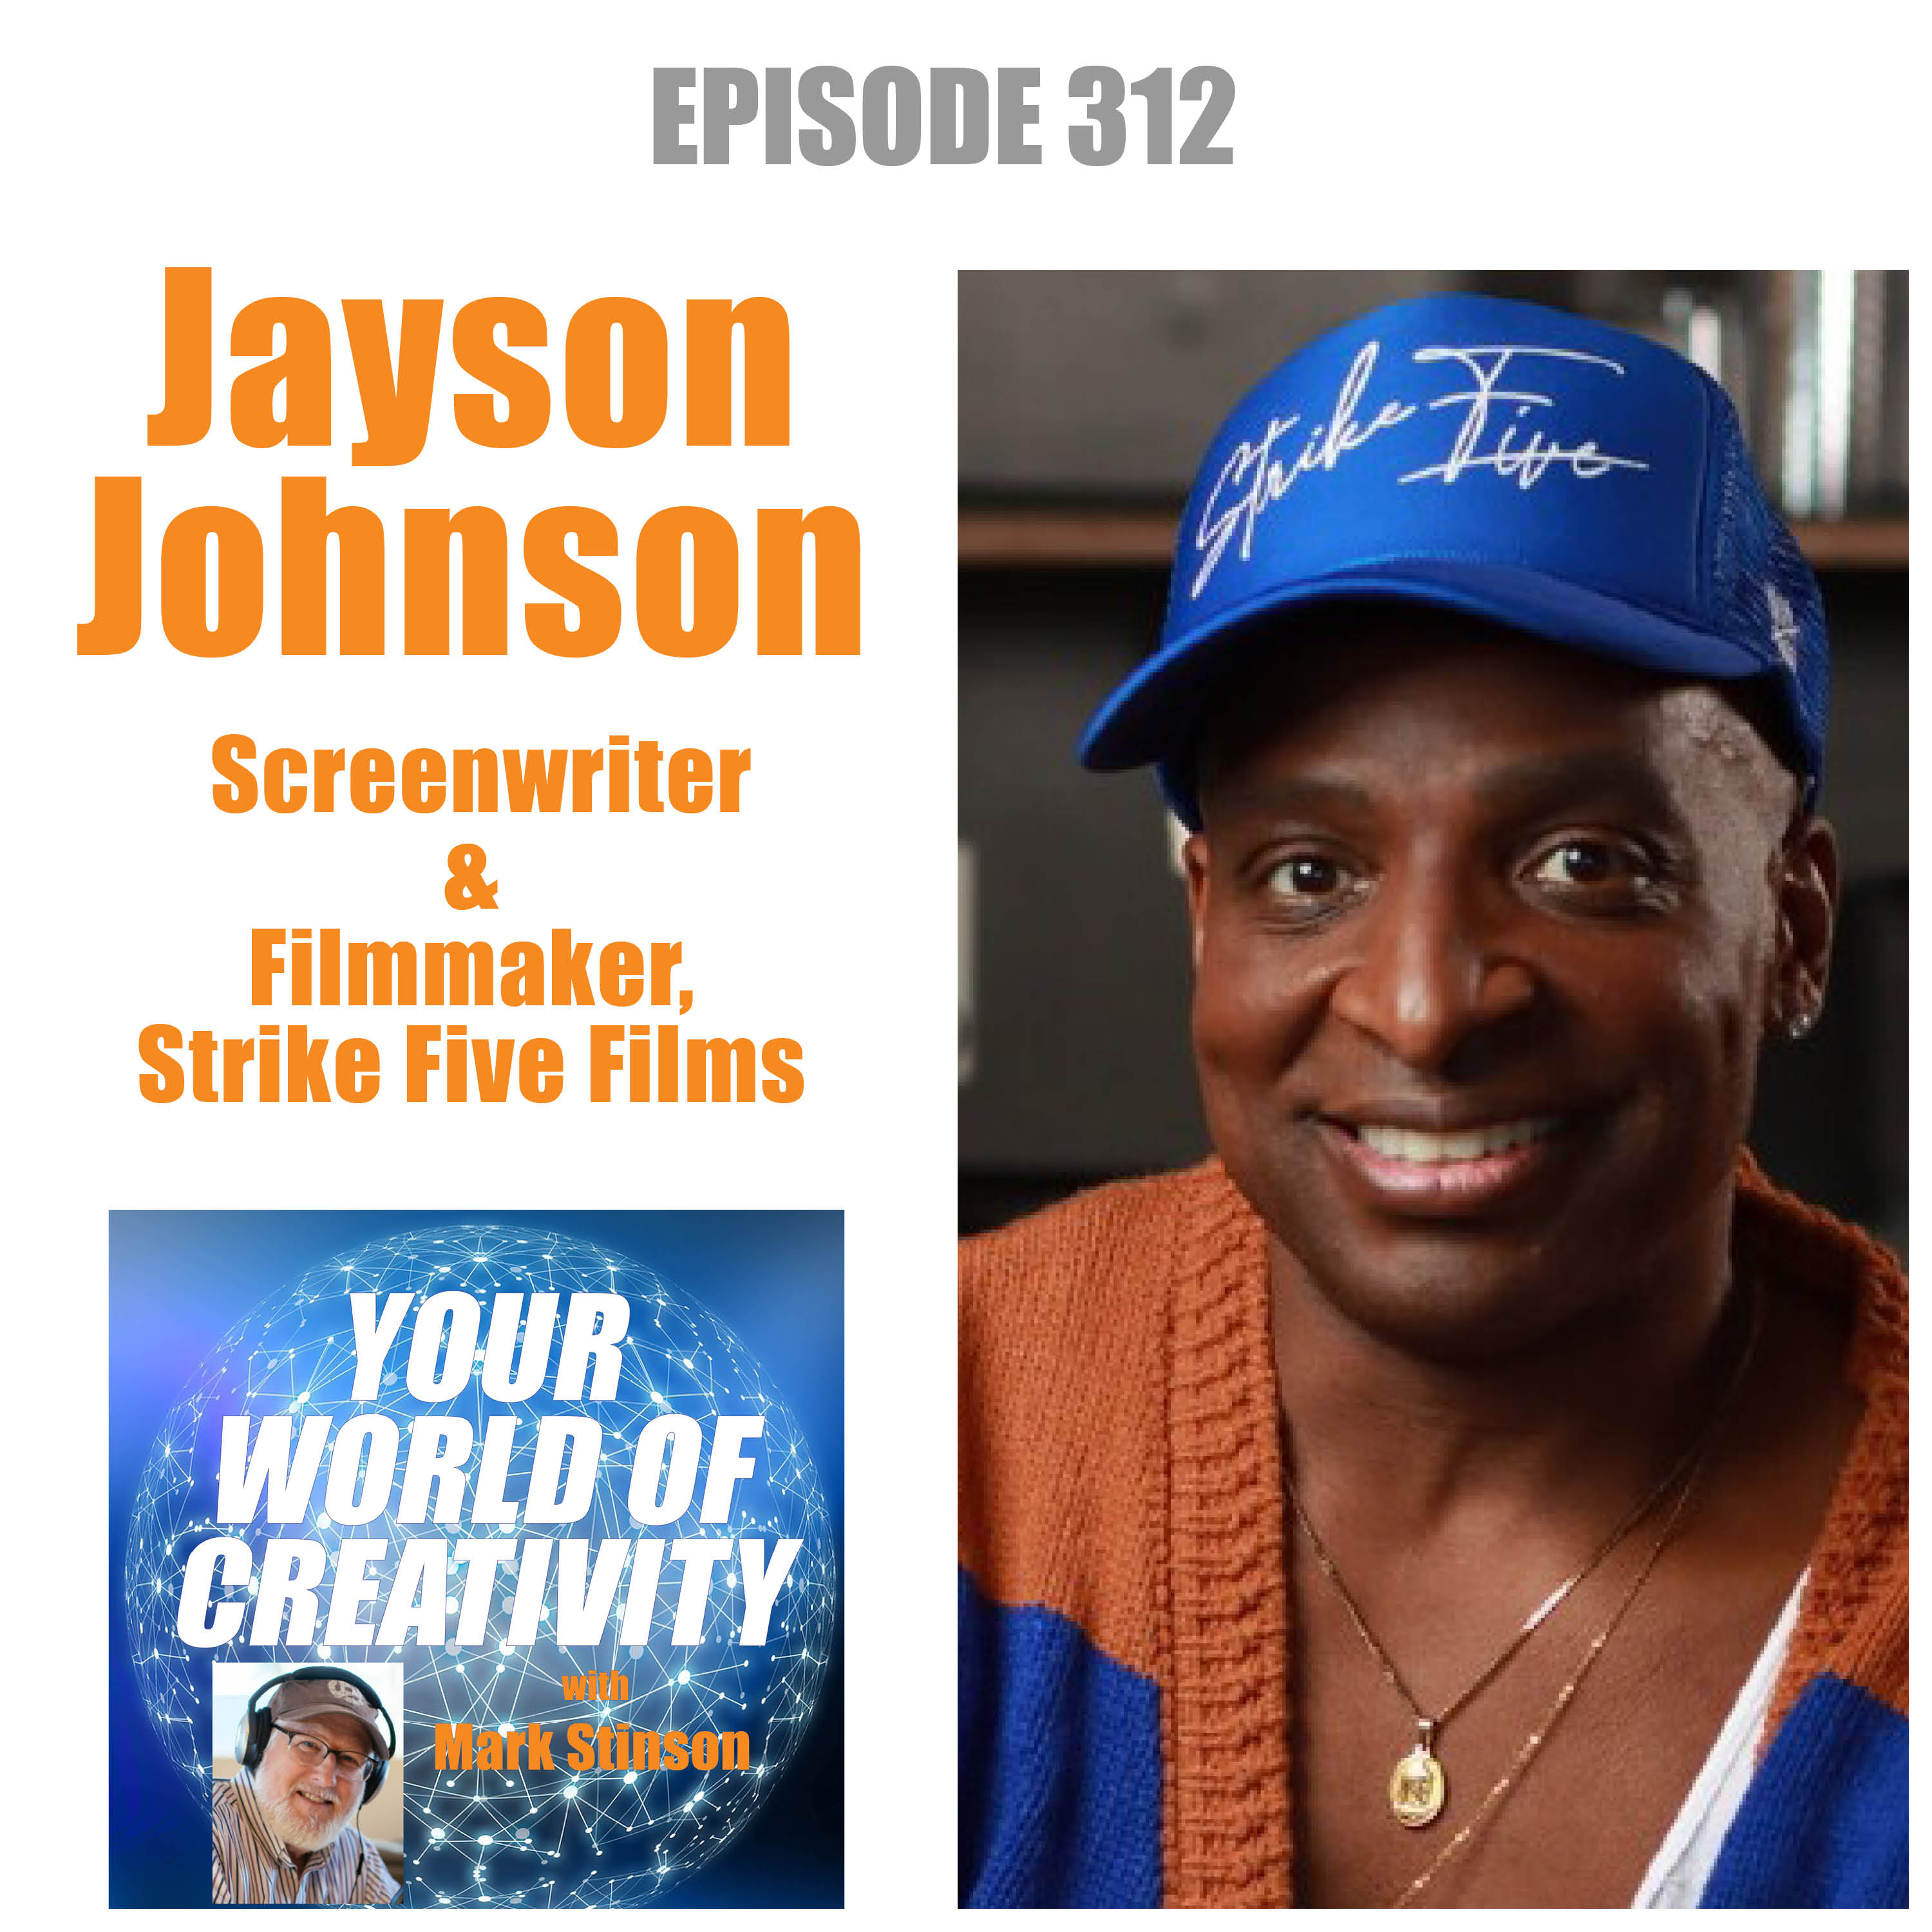 Jayson Johnson, Strike Five Films